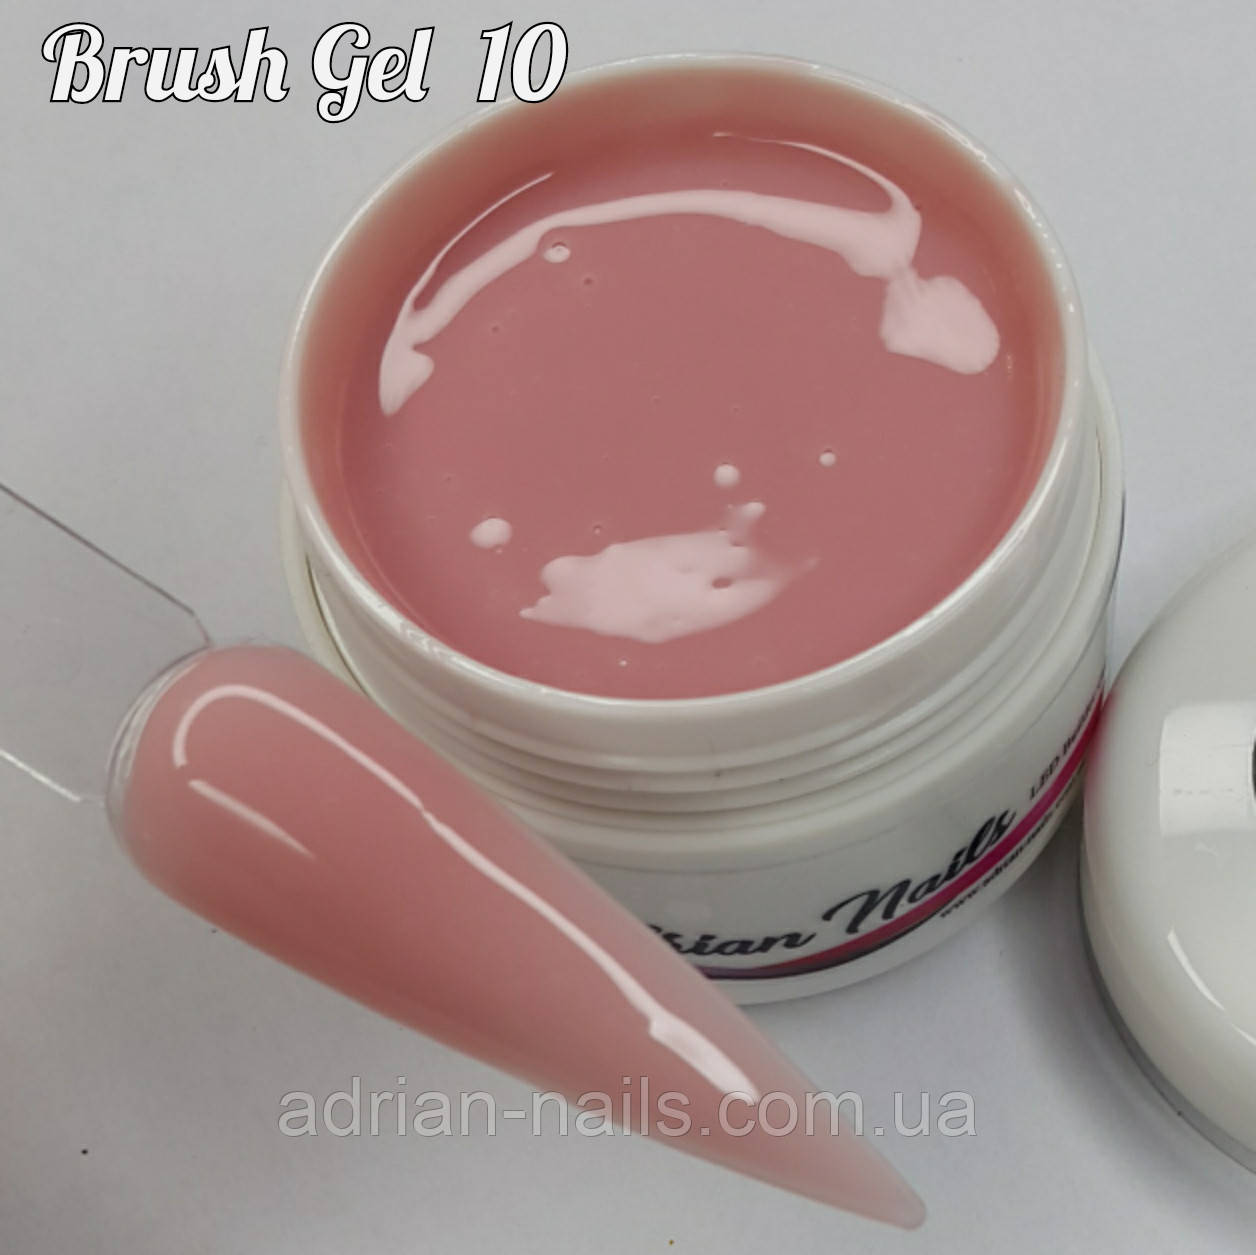 Brush Liquid Gel №10 - 50g